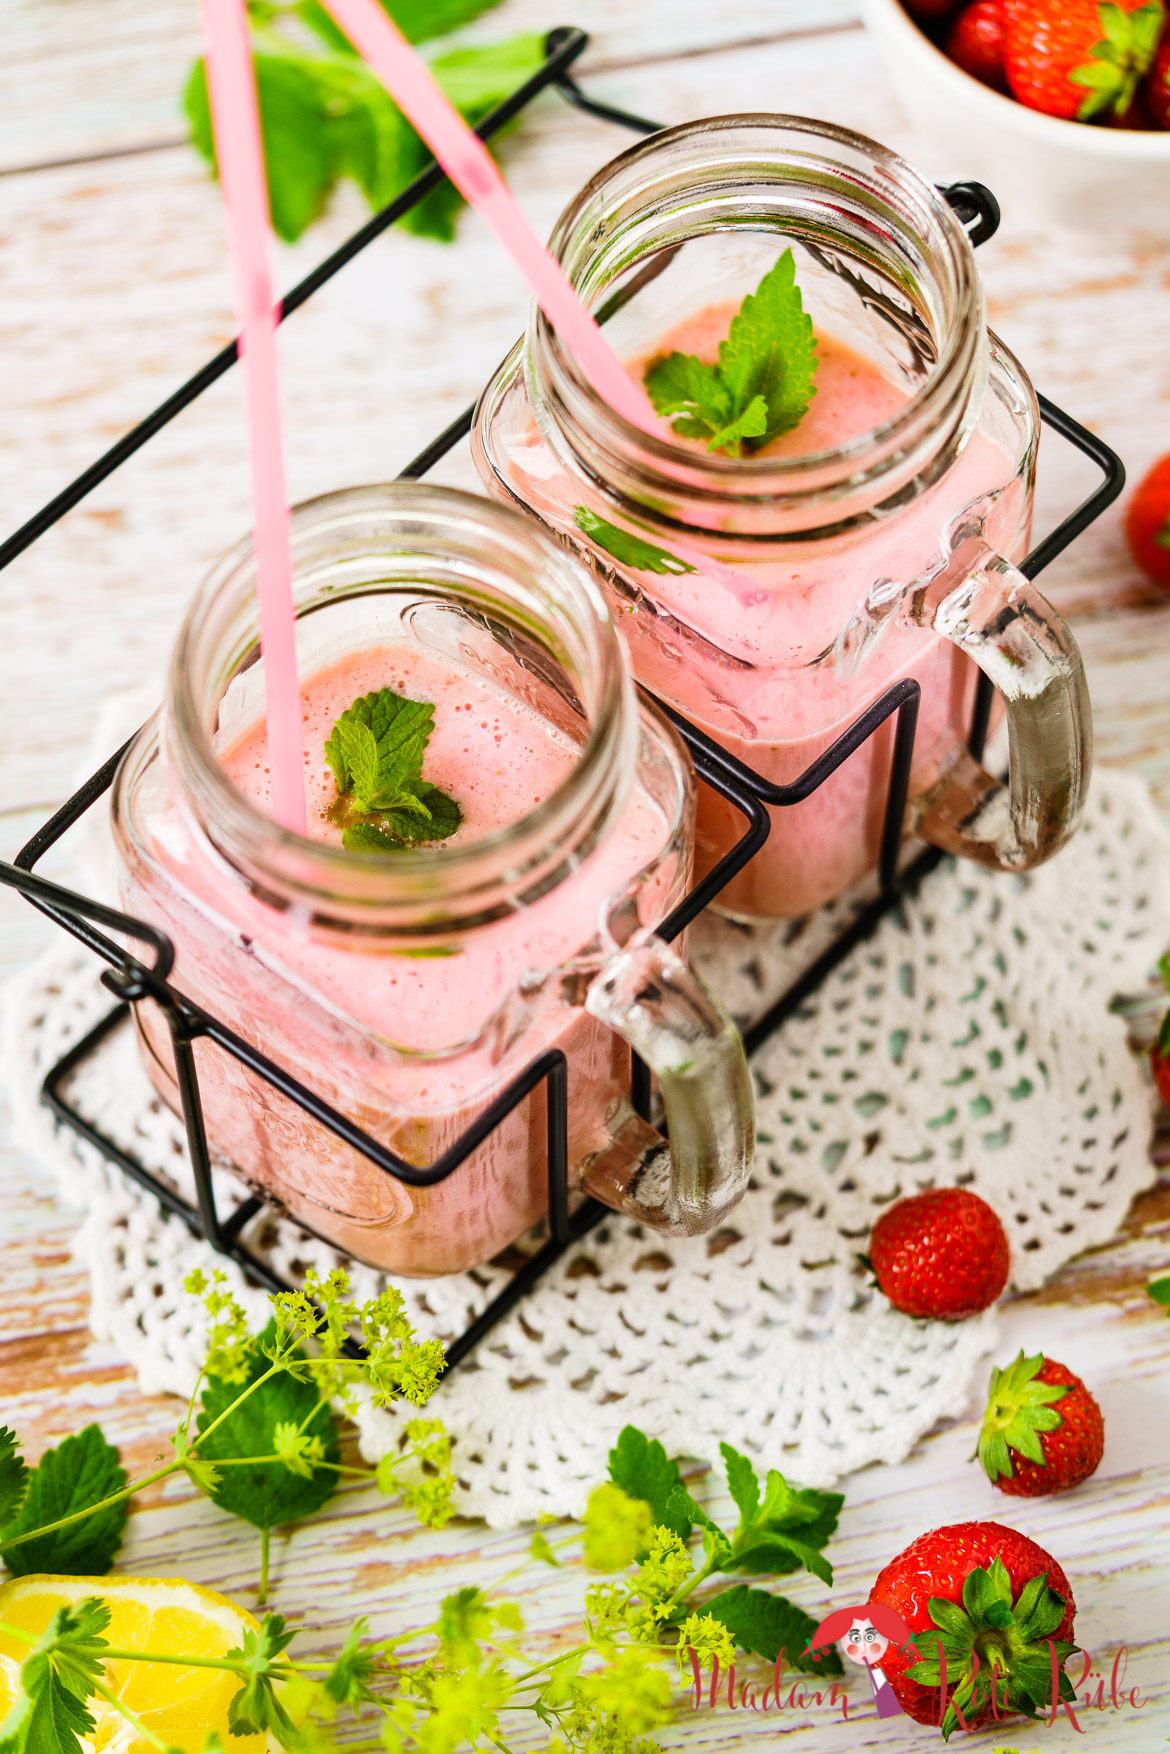 Madam Rote Rübe - Erdbeer-Lassi - köstlich erfrischender Erdbeer-Smoothie mit Joghurt